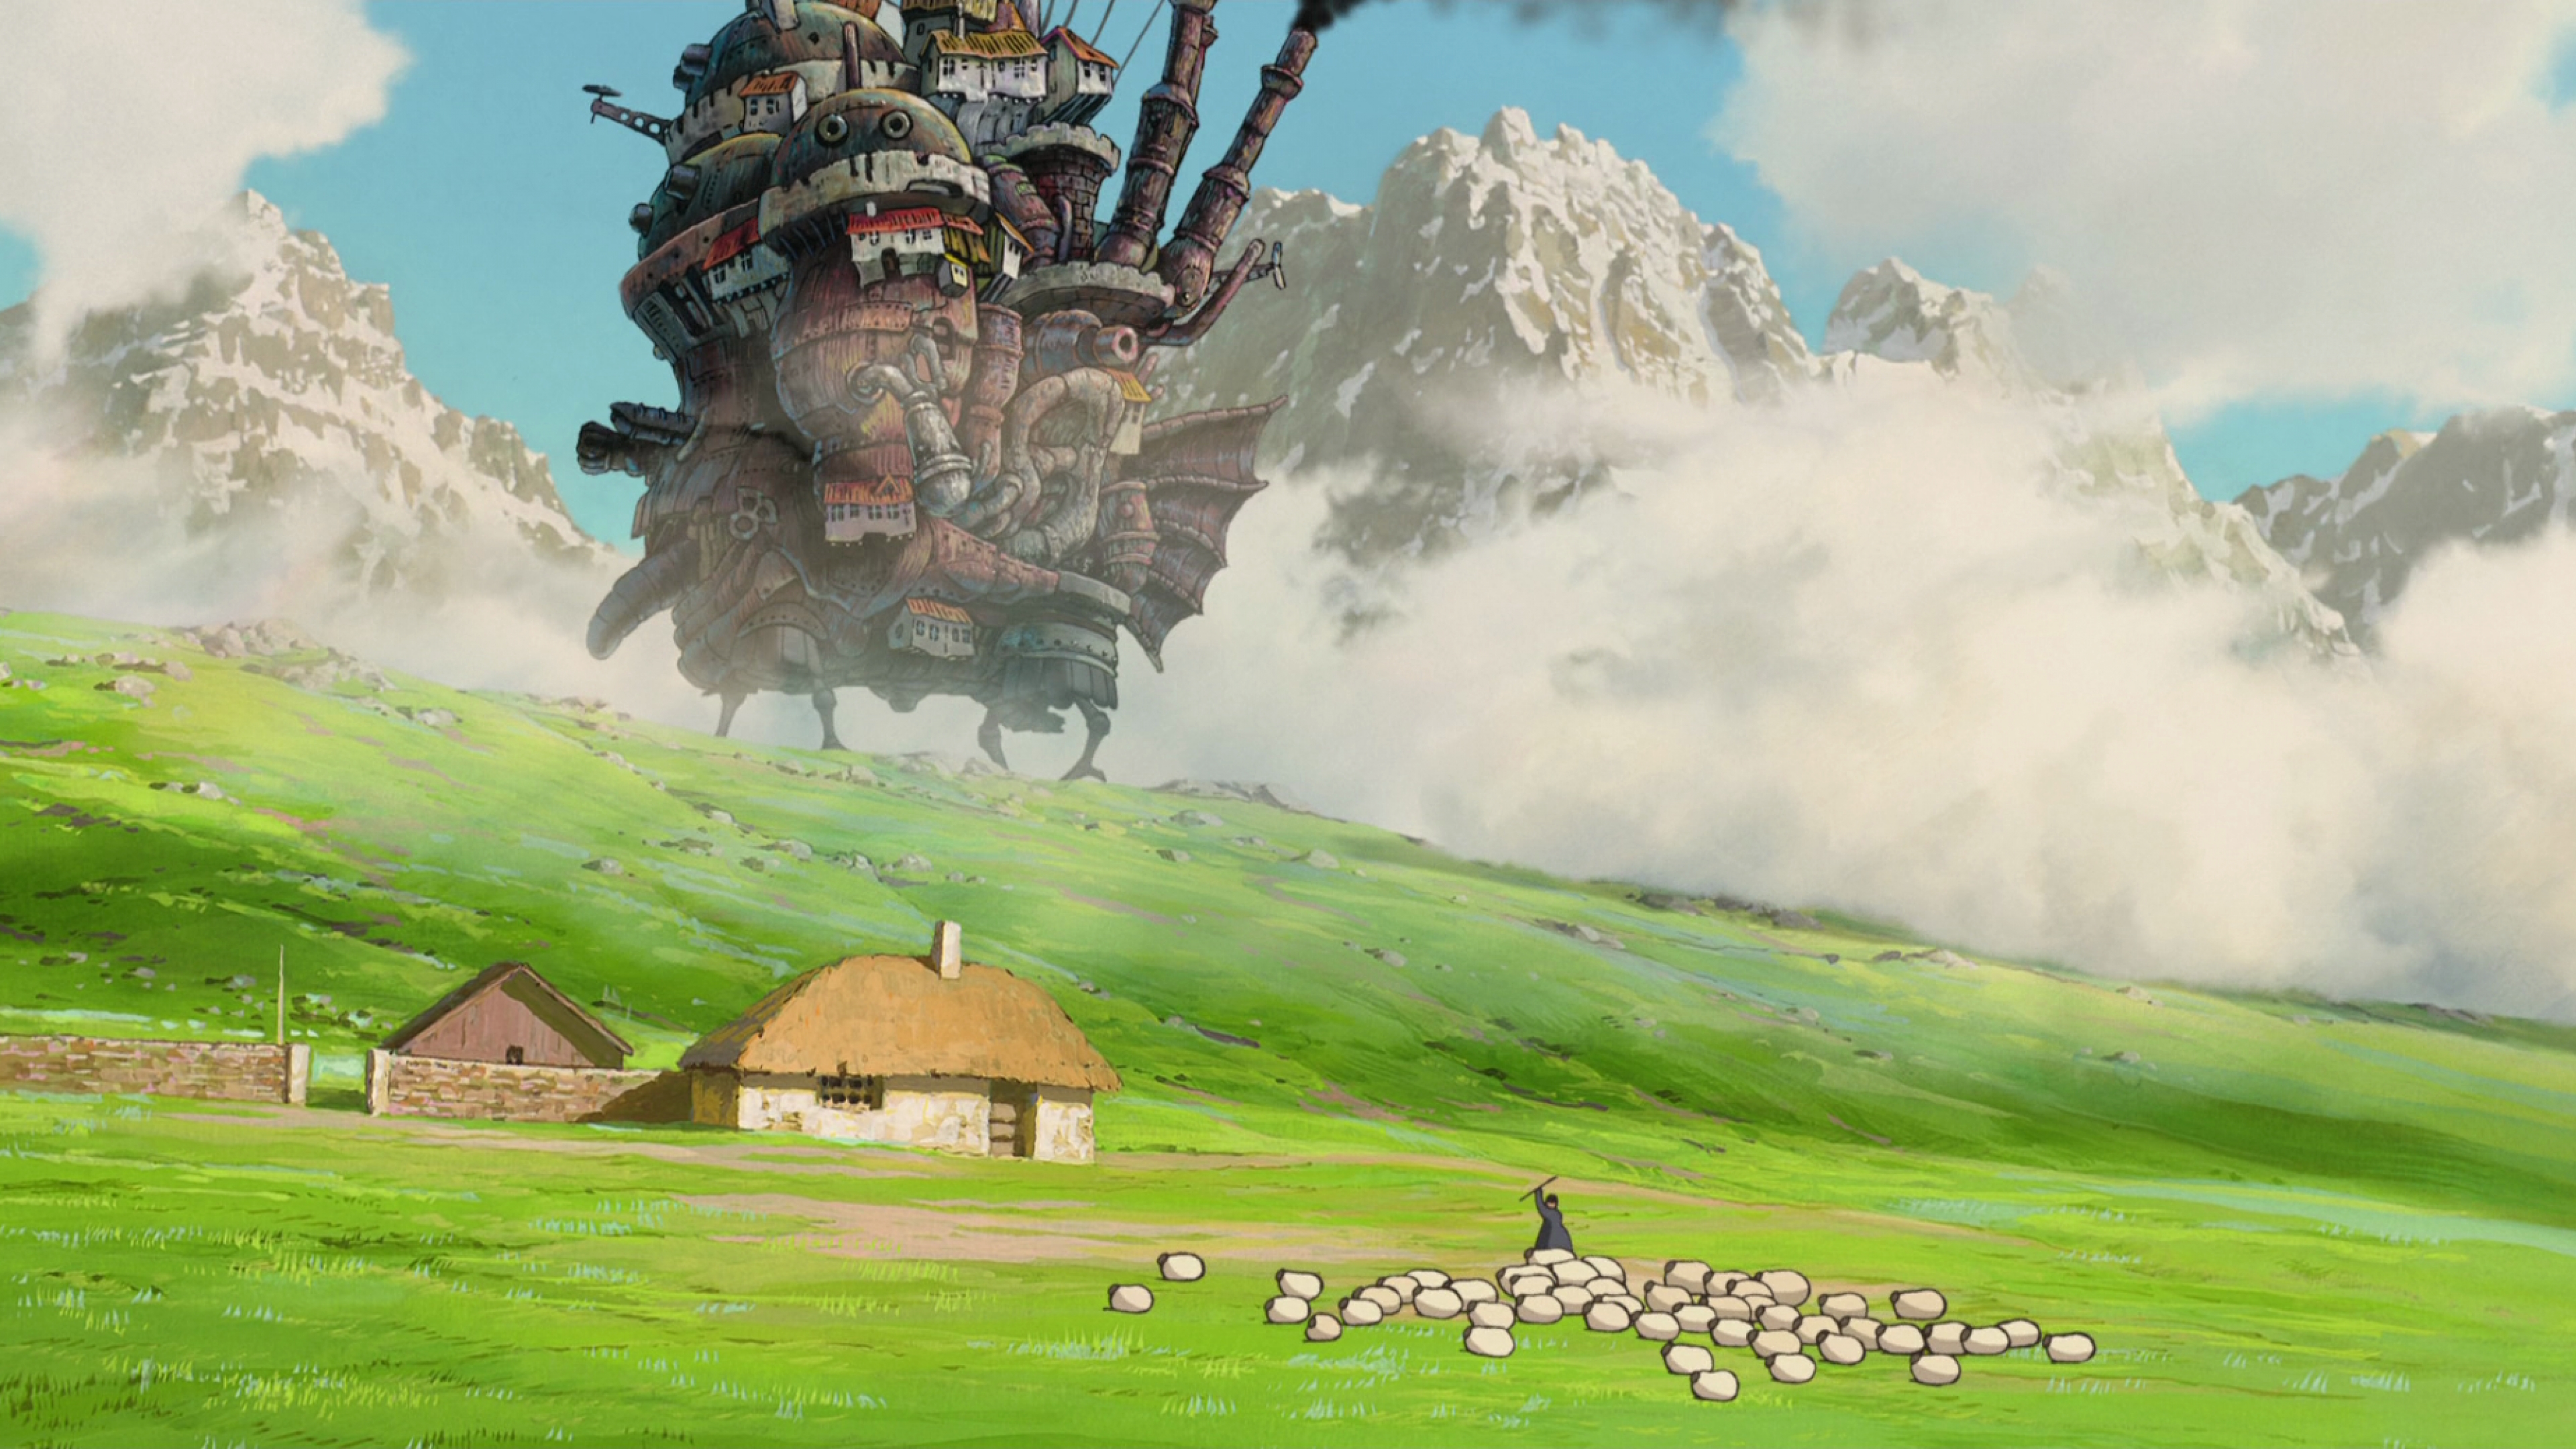 Nền tảng Studio Ghibli cho máy tính - Với sự ra đời của nền tảng Studio Ghibli cho máy tính, bạn có thể tận hưởng các bộ phim hoạt hình độc đáo đến từ Nhật Bản mà không cần phải đến rạp chiếu. Bạn có thể tải các phim yêu thích về máy tính để xem bất cứ khi nào muốn, và được trải nghiệm tất cả những gì Studio Ghibli mang lại.